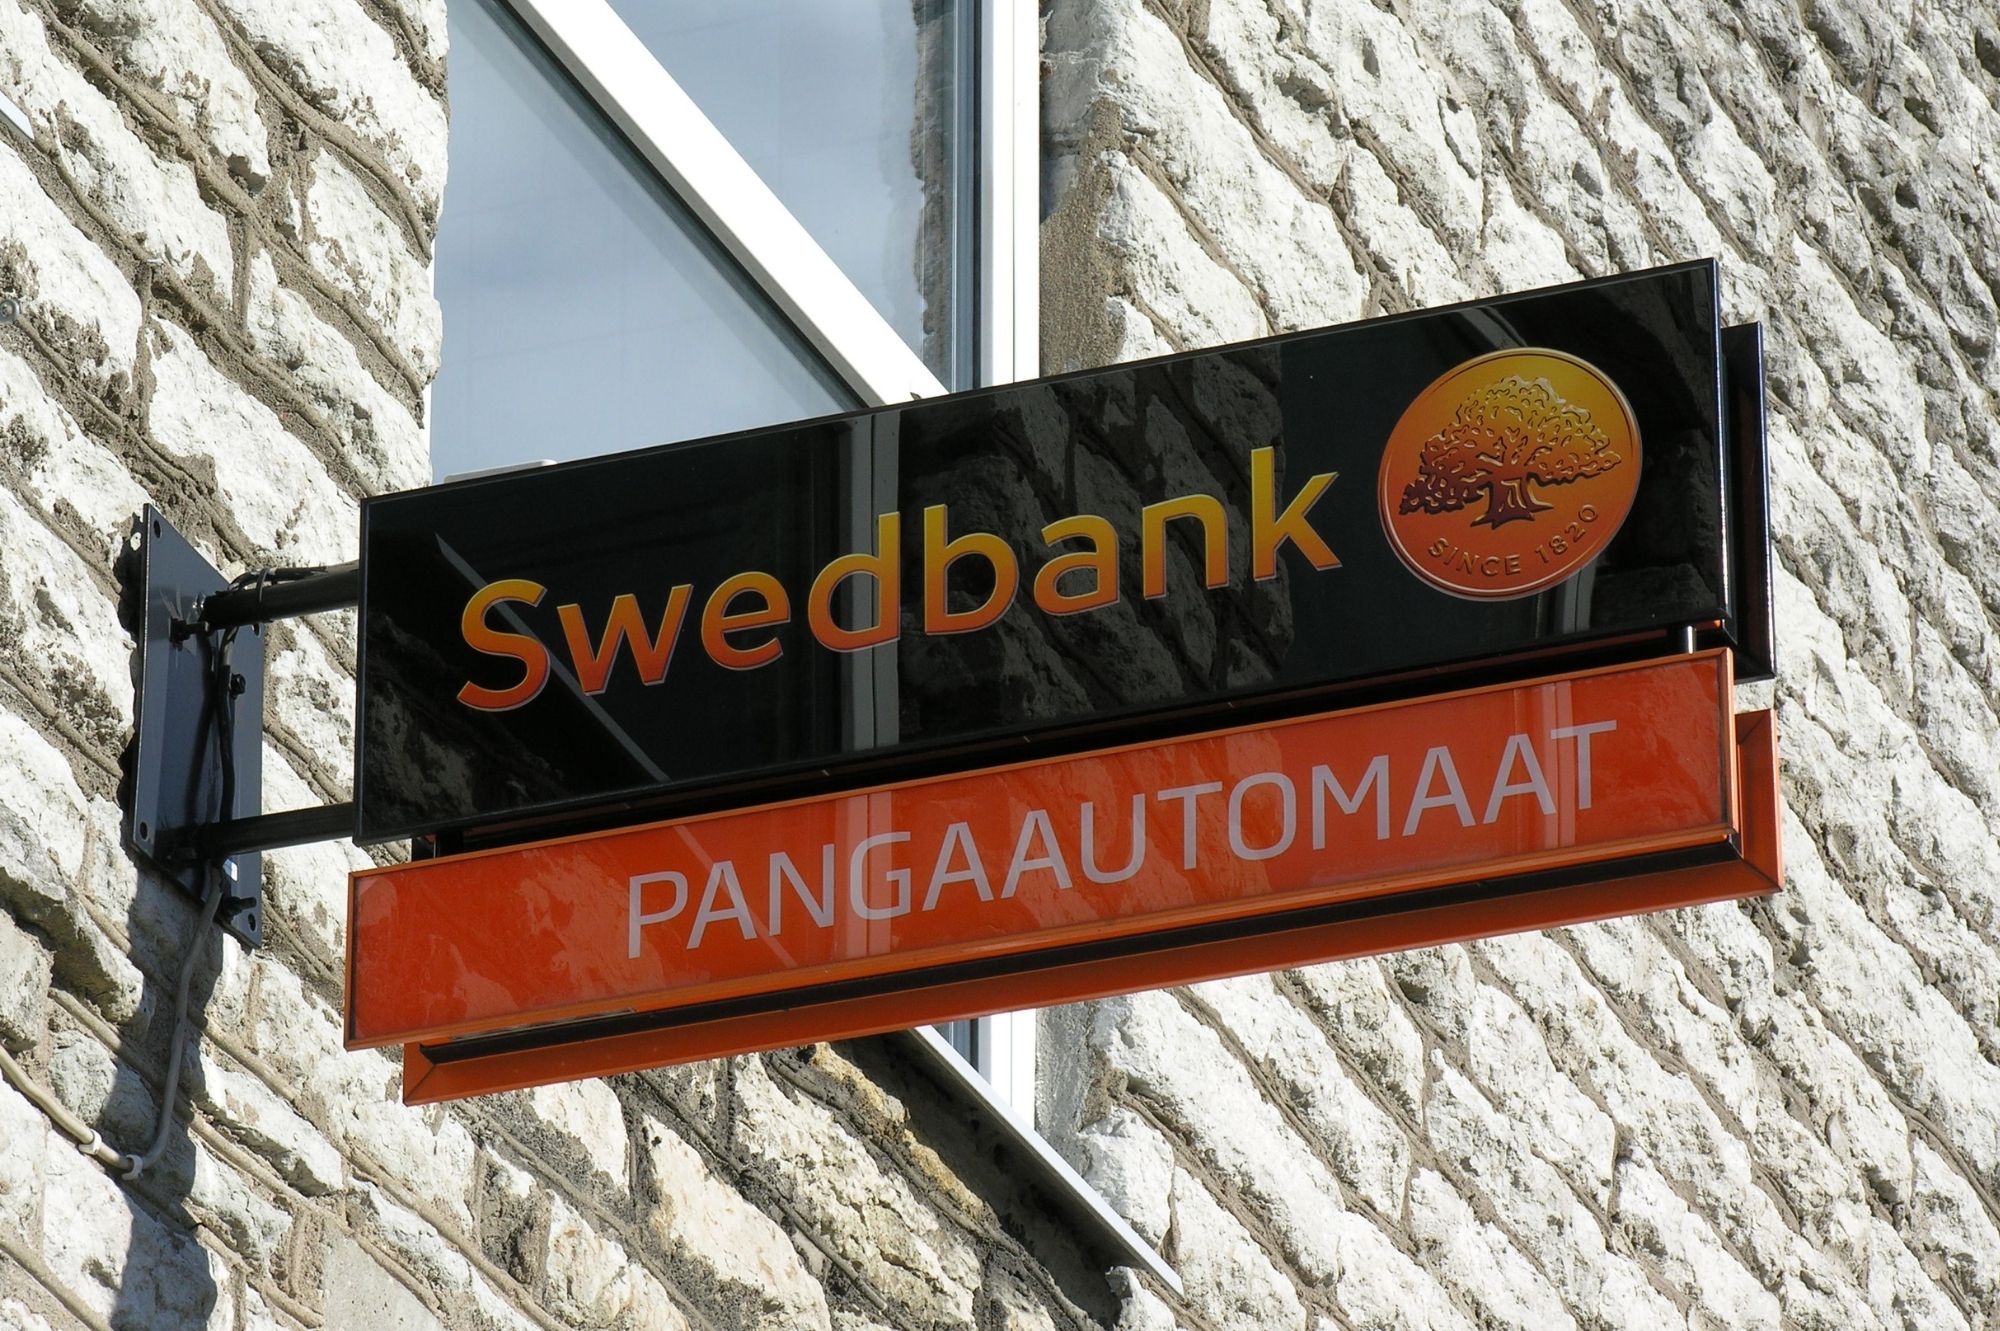 В ночь на четверг возможны перебои в работе электронных каналов Swedbank. Автор/Источник фото: Vitali Faktulin.